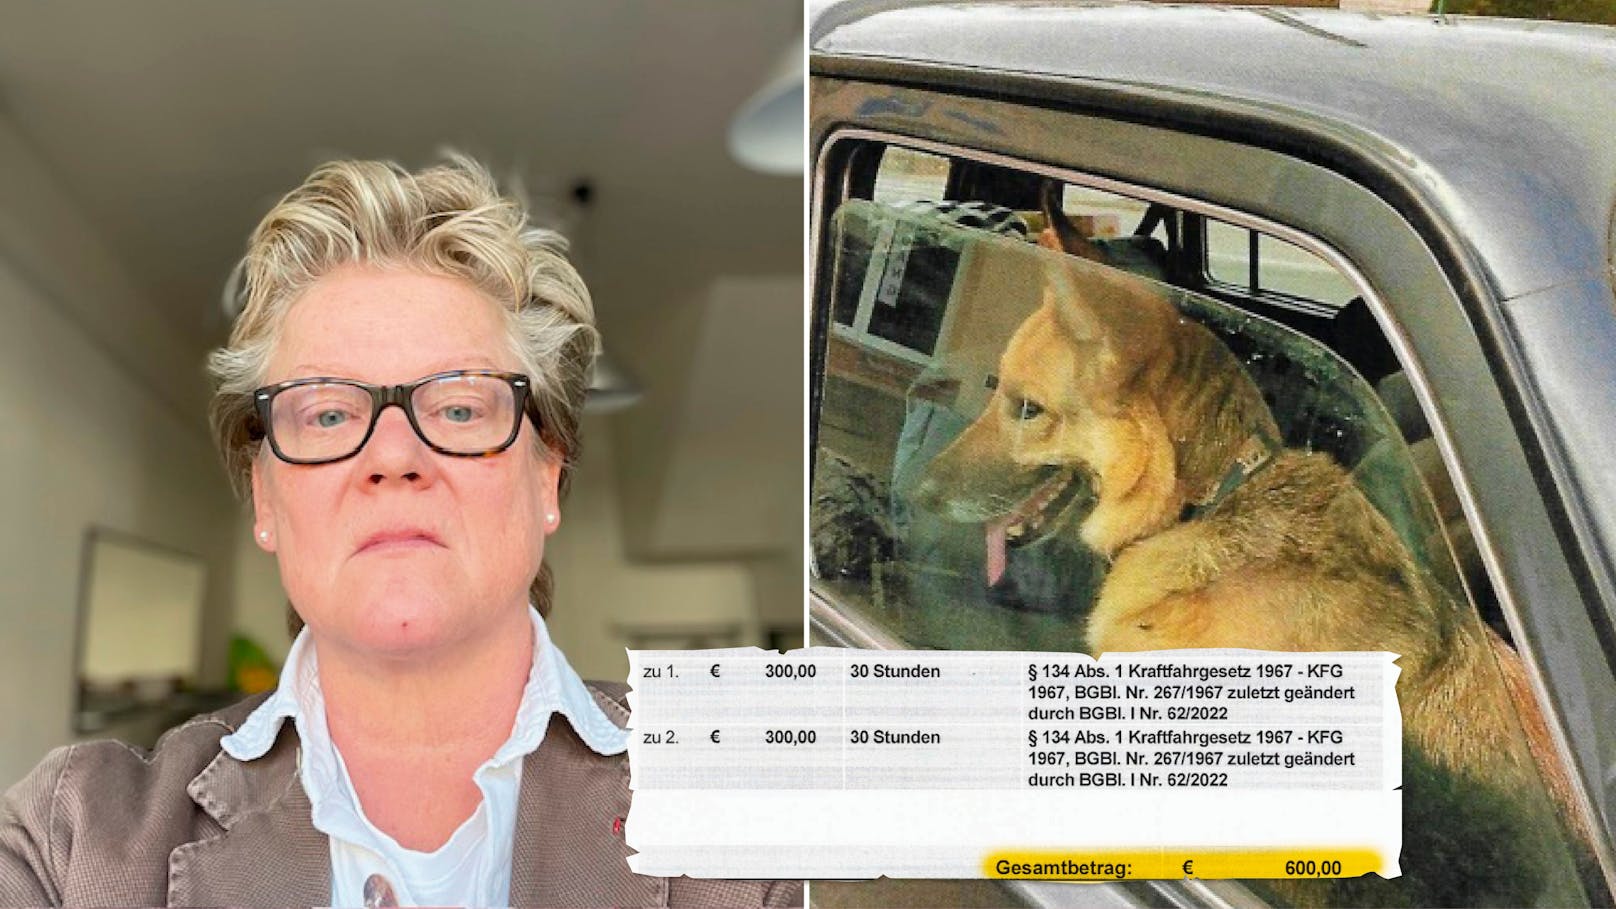 <strong>09.11.2023: Hund "Elly" saß im Auto vorne – 600 Euro Strafe</strong>: Anwältin Ulrike Werner war mit ihren beiden Vierbeinern im Auto in Niederösterreich zum Einkaufen unterwegs. Der Shopping-Ausflug endete teurer als geplant. <a rel="nofollow" data-li-document-ref="120003382" href="https://www.heute.at/s/hund-elly-sass-im-auto-vorne-600-euro-strafe-in-noe-120003382">Weiterlesen >></a>